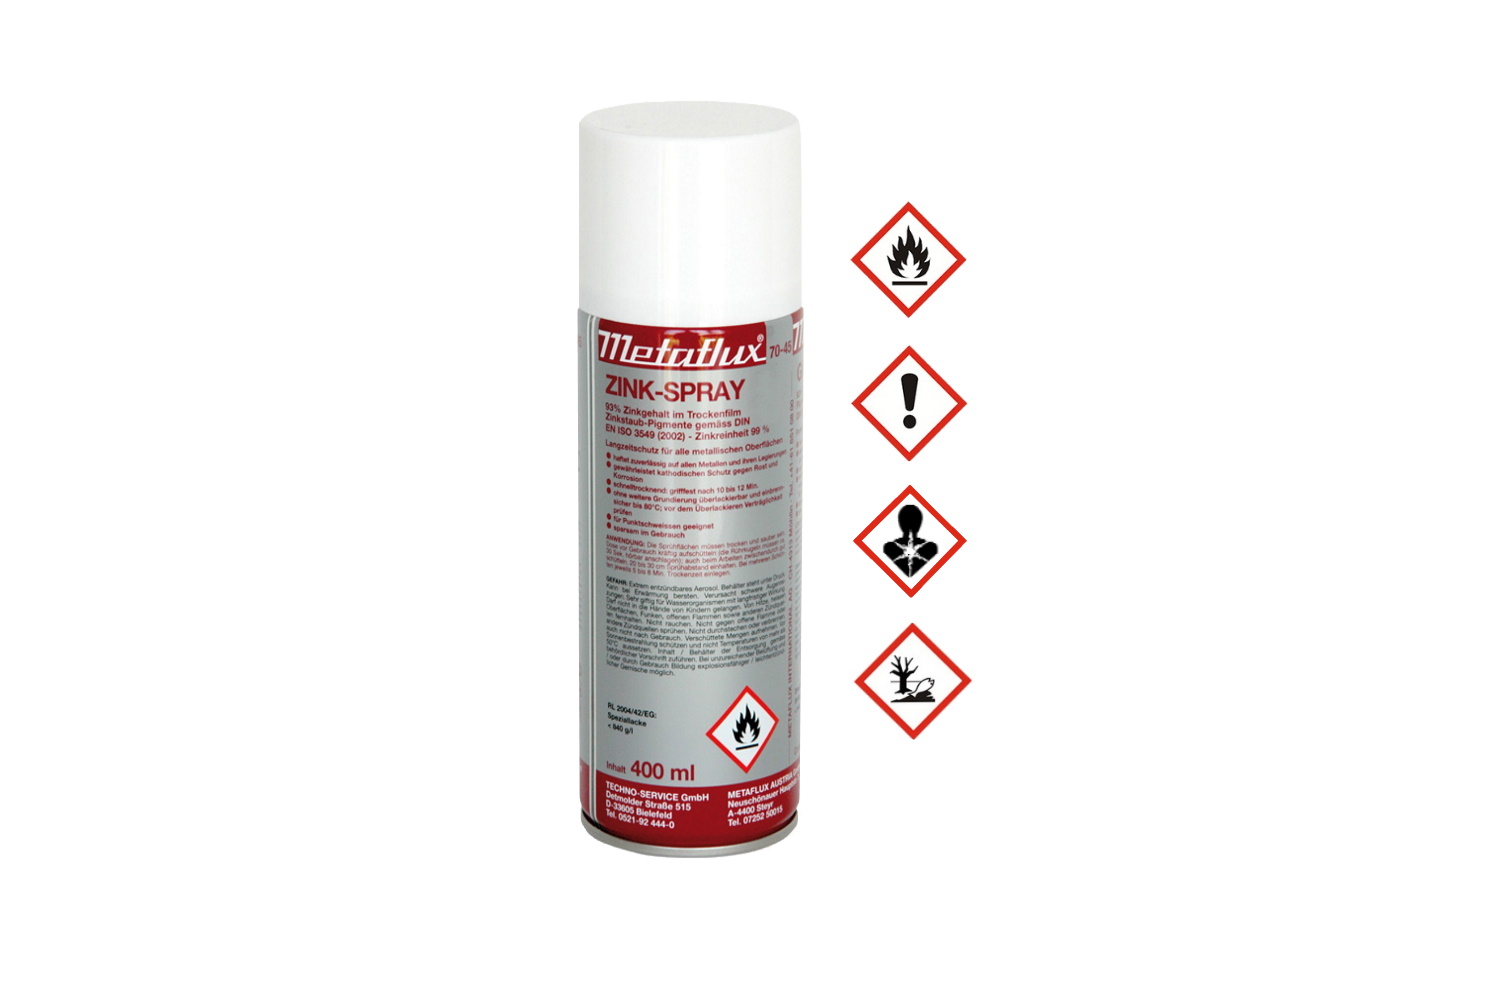 Zink-Spray 400ml Metaflux | 70-4500 - 1